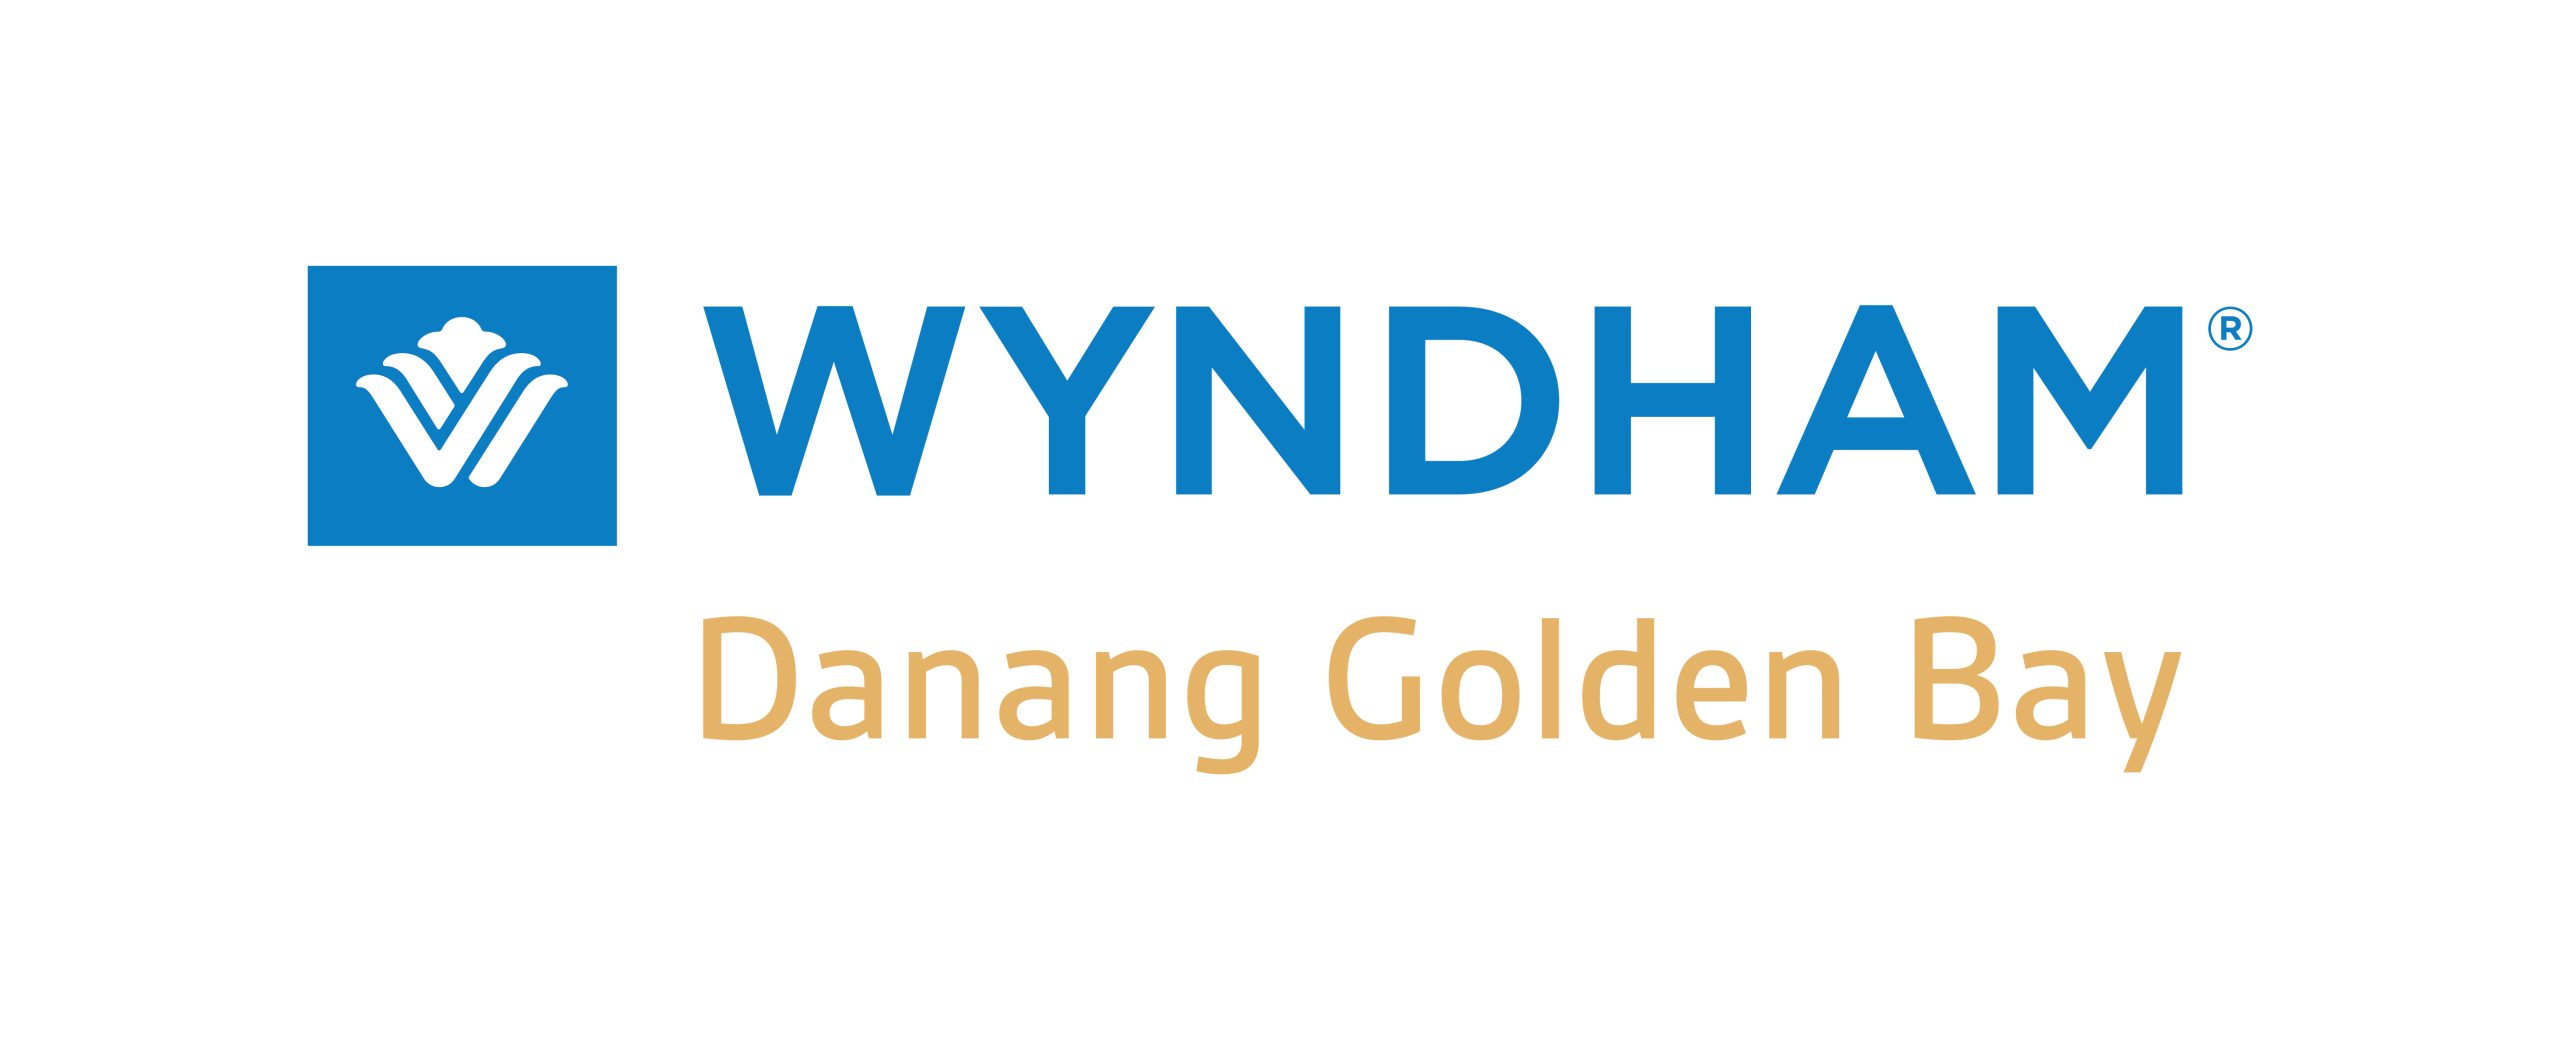 Wyndham Danang Golden Bay Hotel